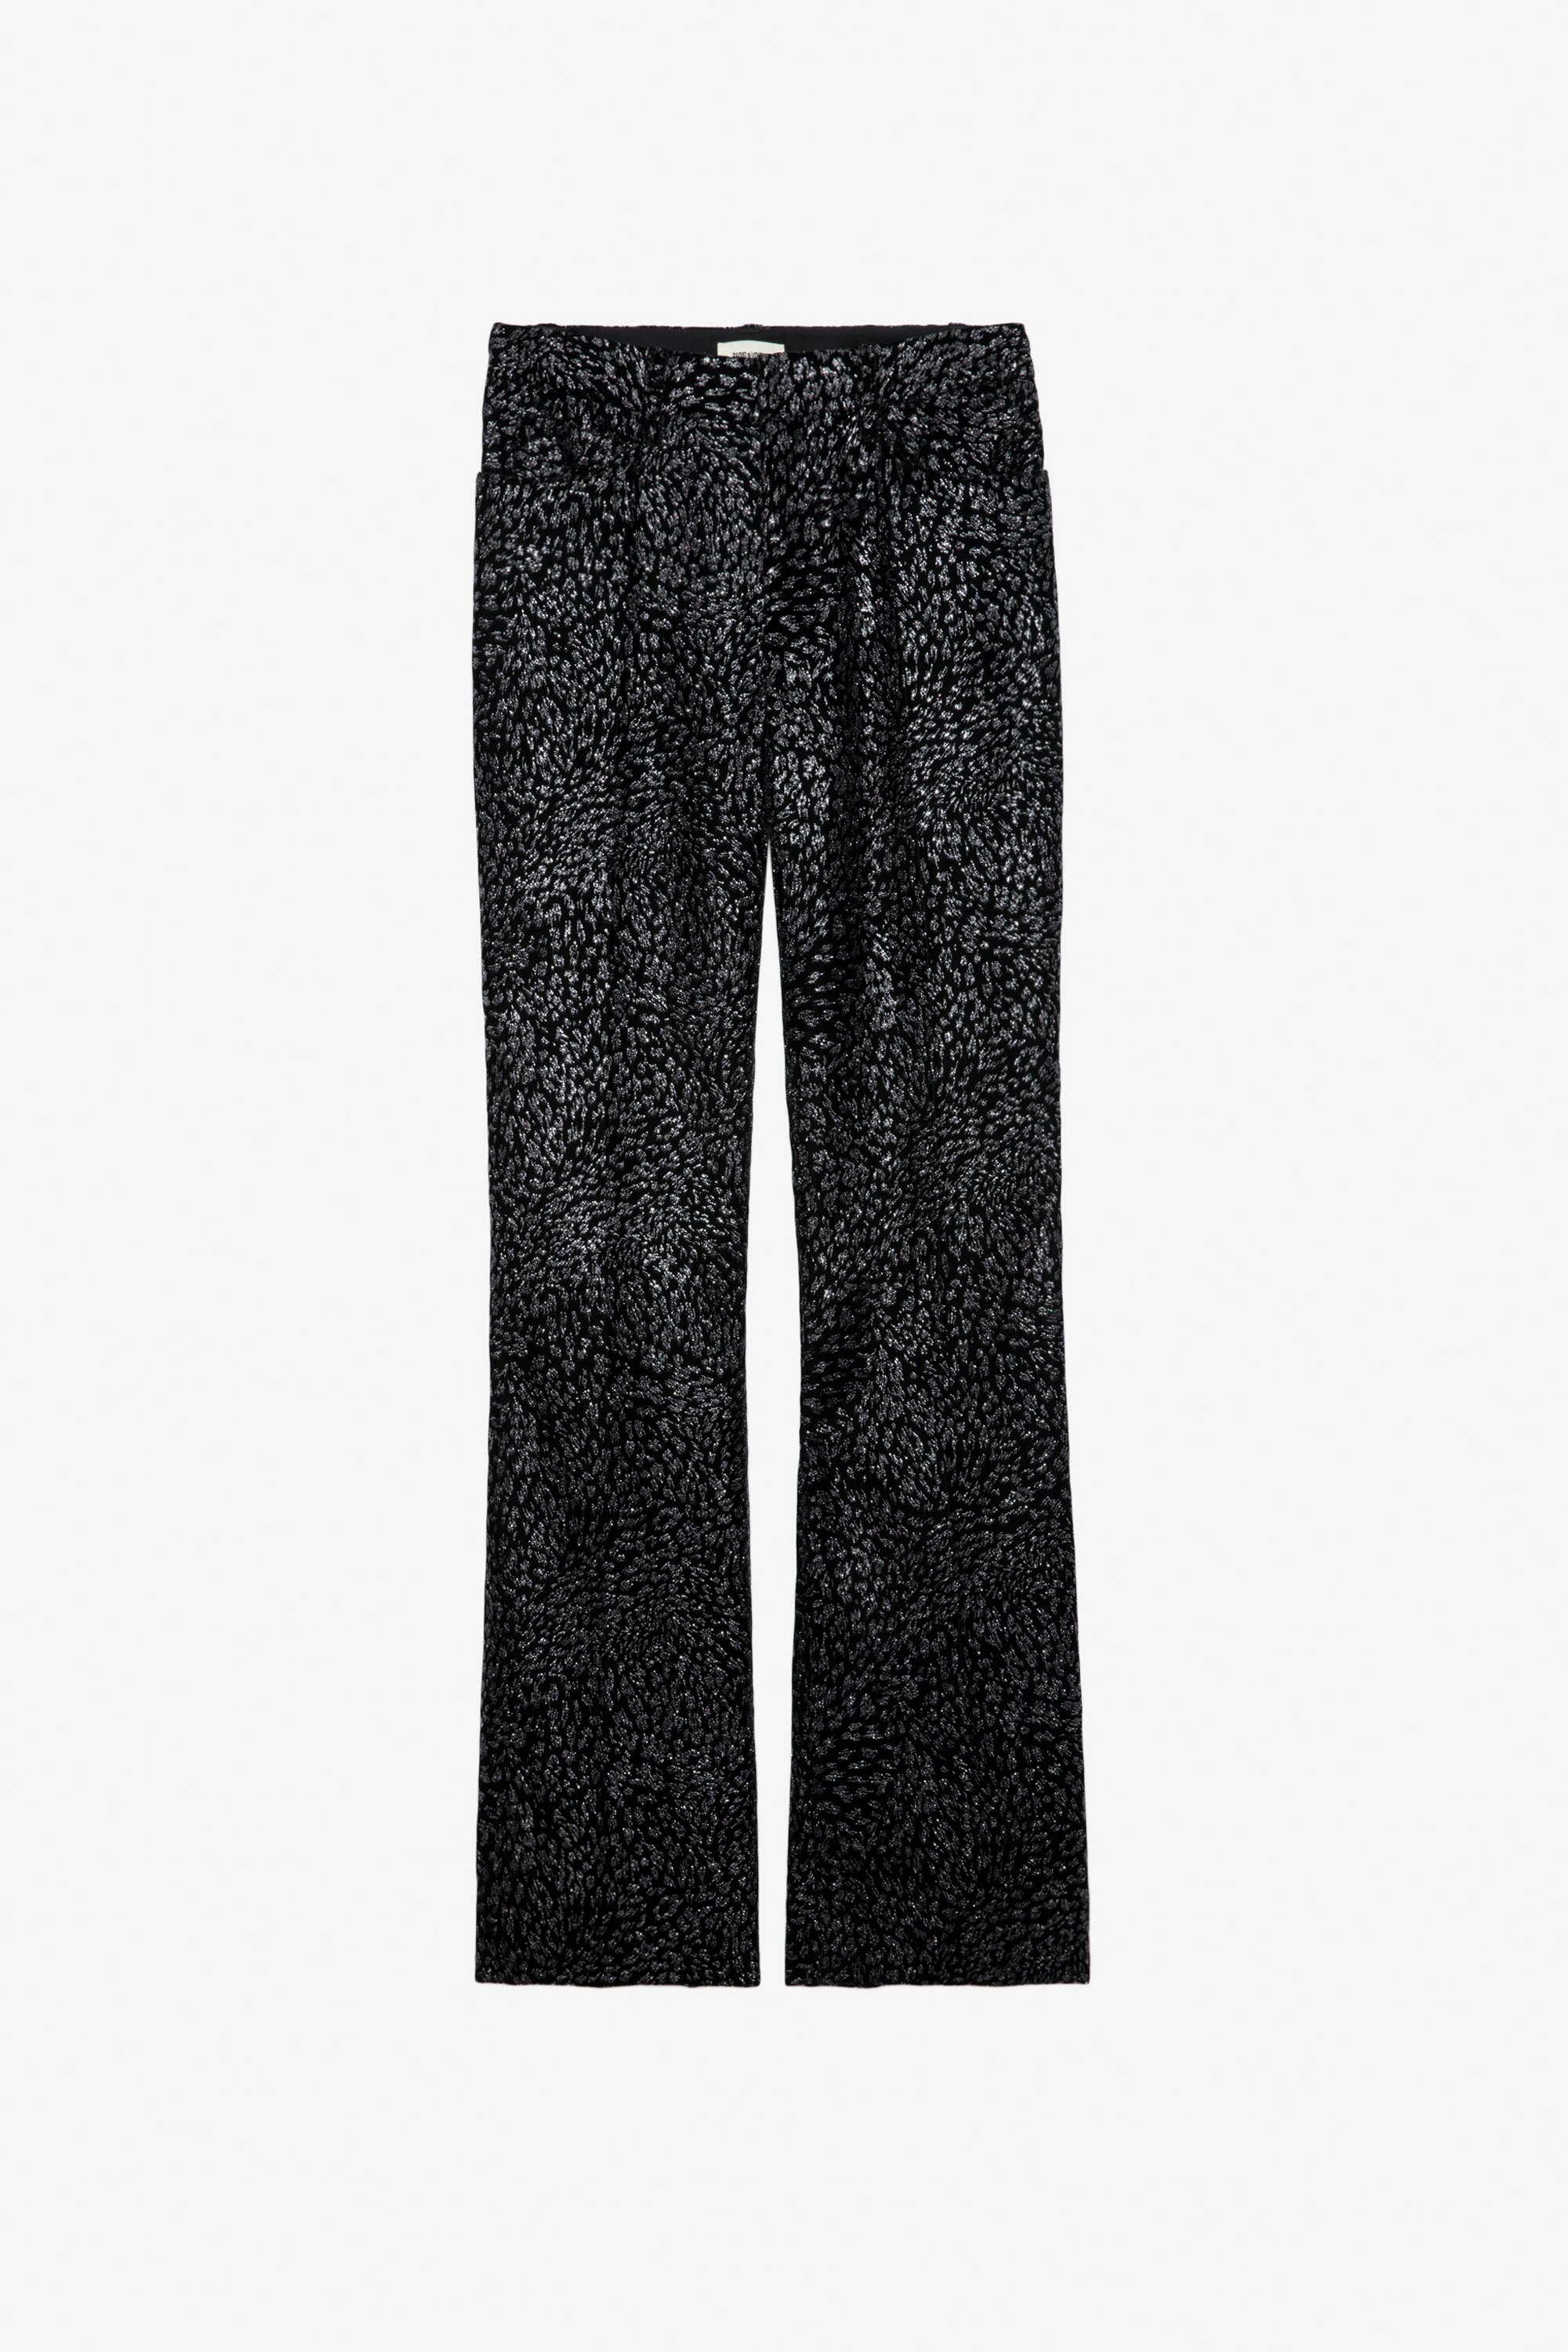 Piston Glitter Velvet Trousers - Women’s black tailored glitter velvet trousers with leopard motif.